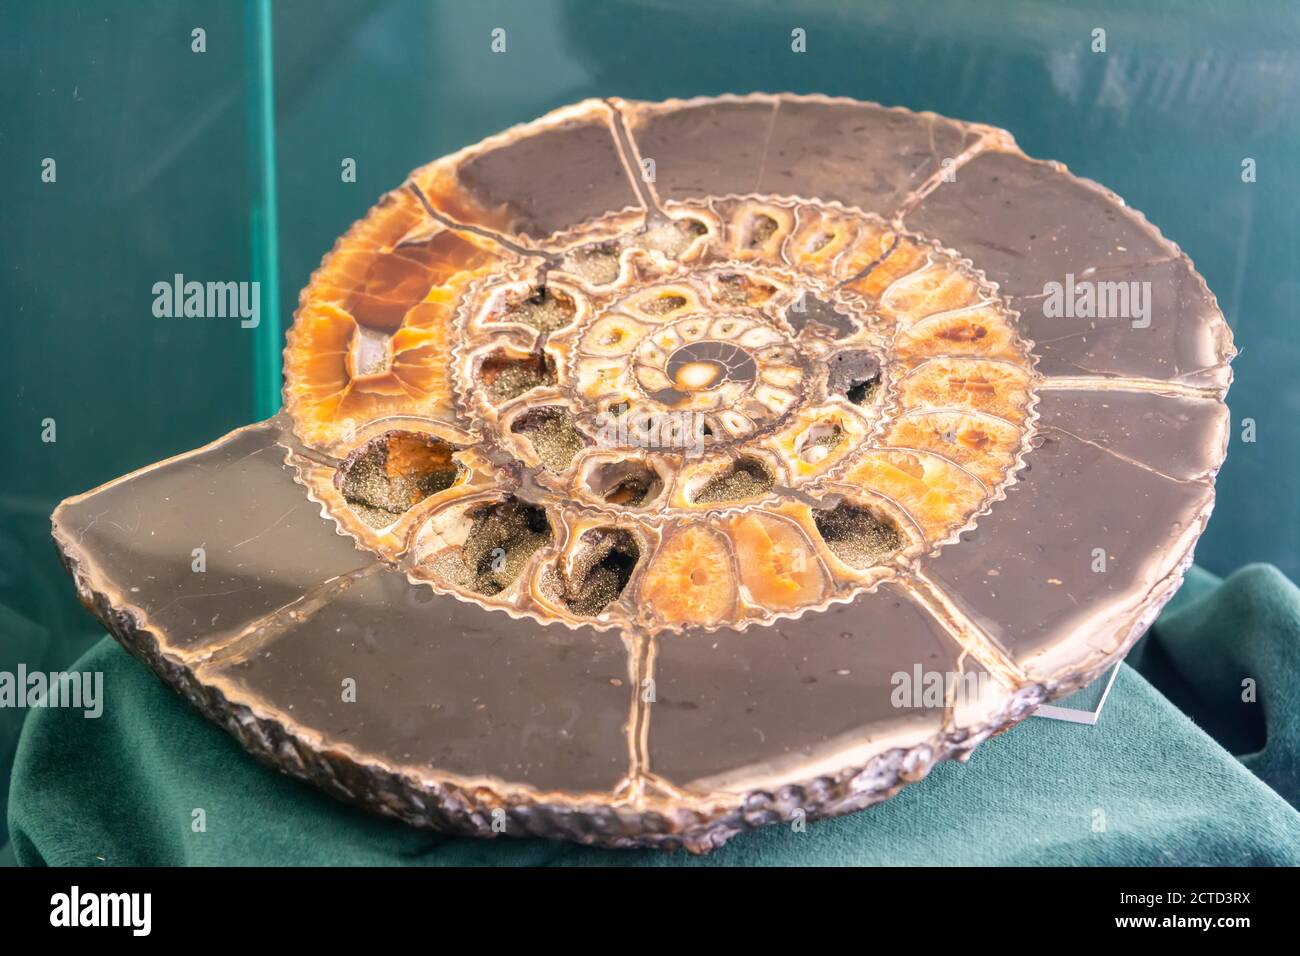 Ammonita vista en sección, revelando las cámaras internas y septos. Los amonitas son animales marinos extintos de moluscos. Foto de stock